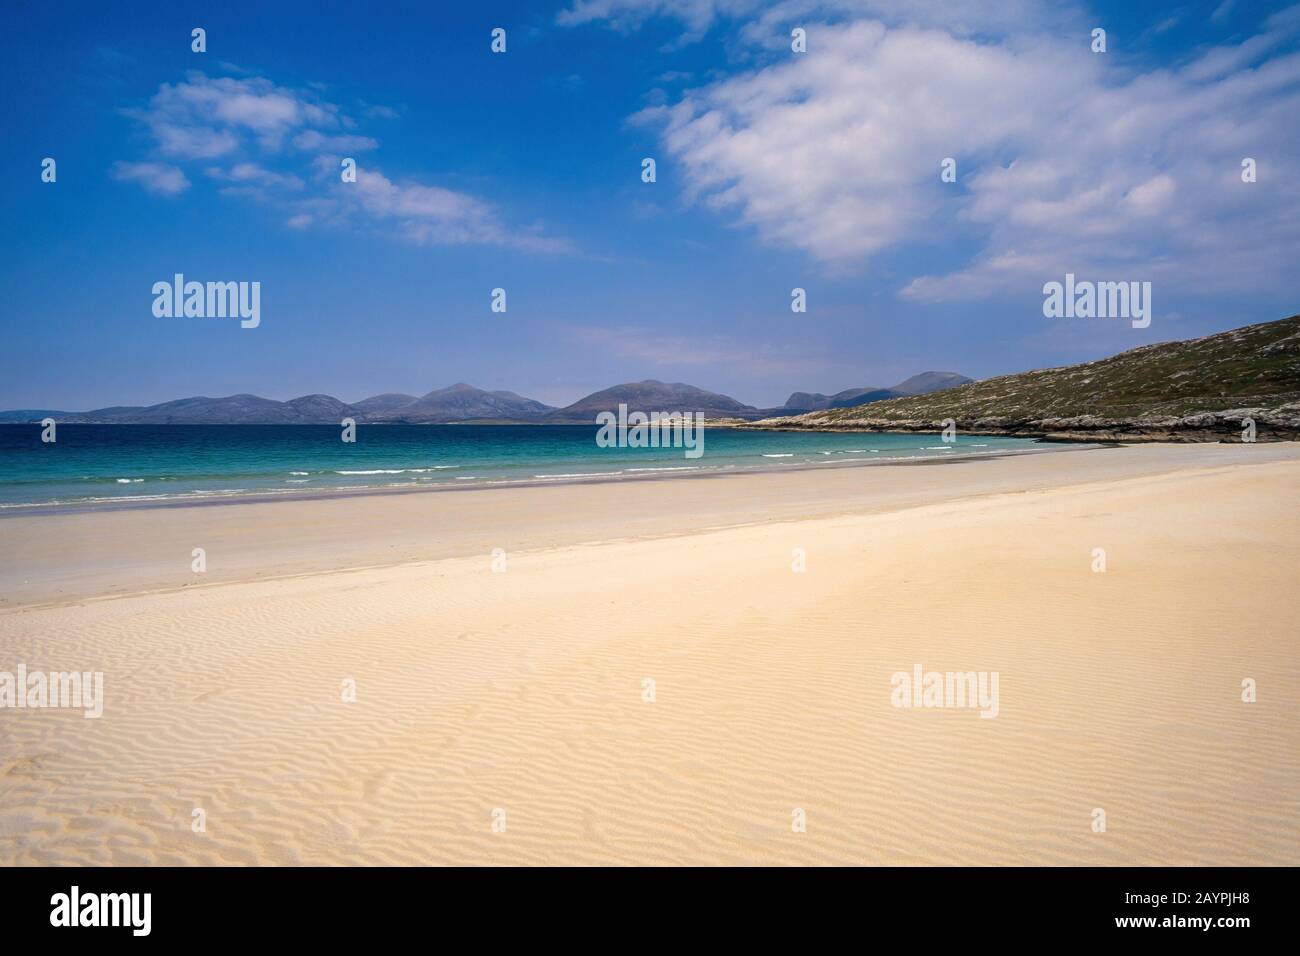 La bellissima spiaggia di sabbia deserta Traigh Rosamol a Luskhentire (Losgaintir) sull'isola di Harris nelle Ebridi esterne, Scozia, Regno Unito Foto Stock